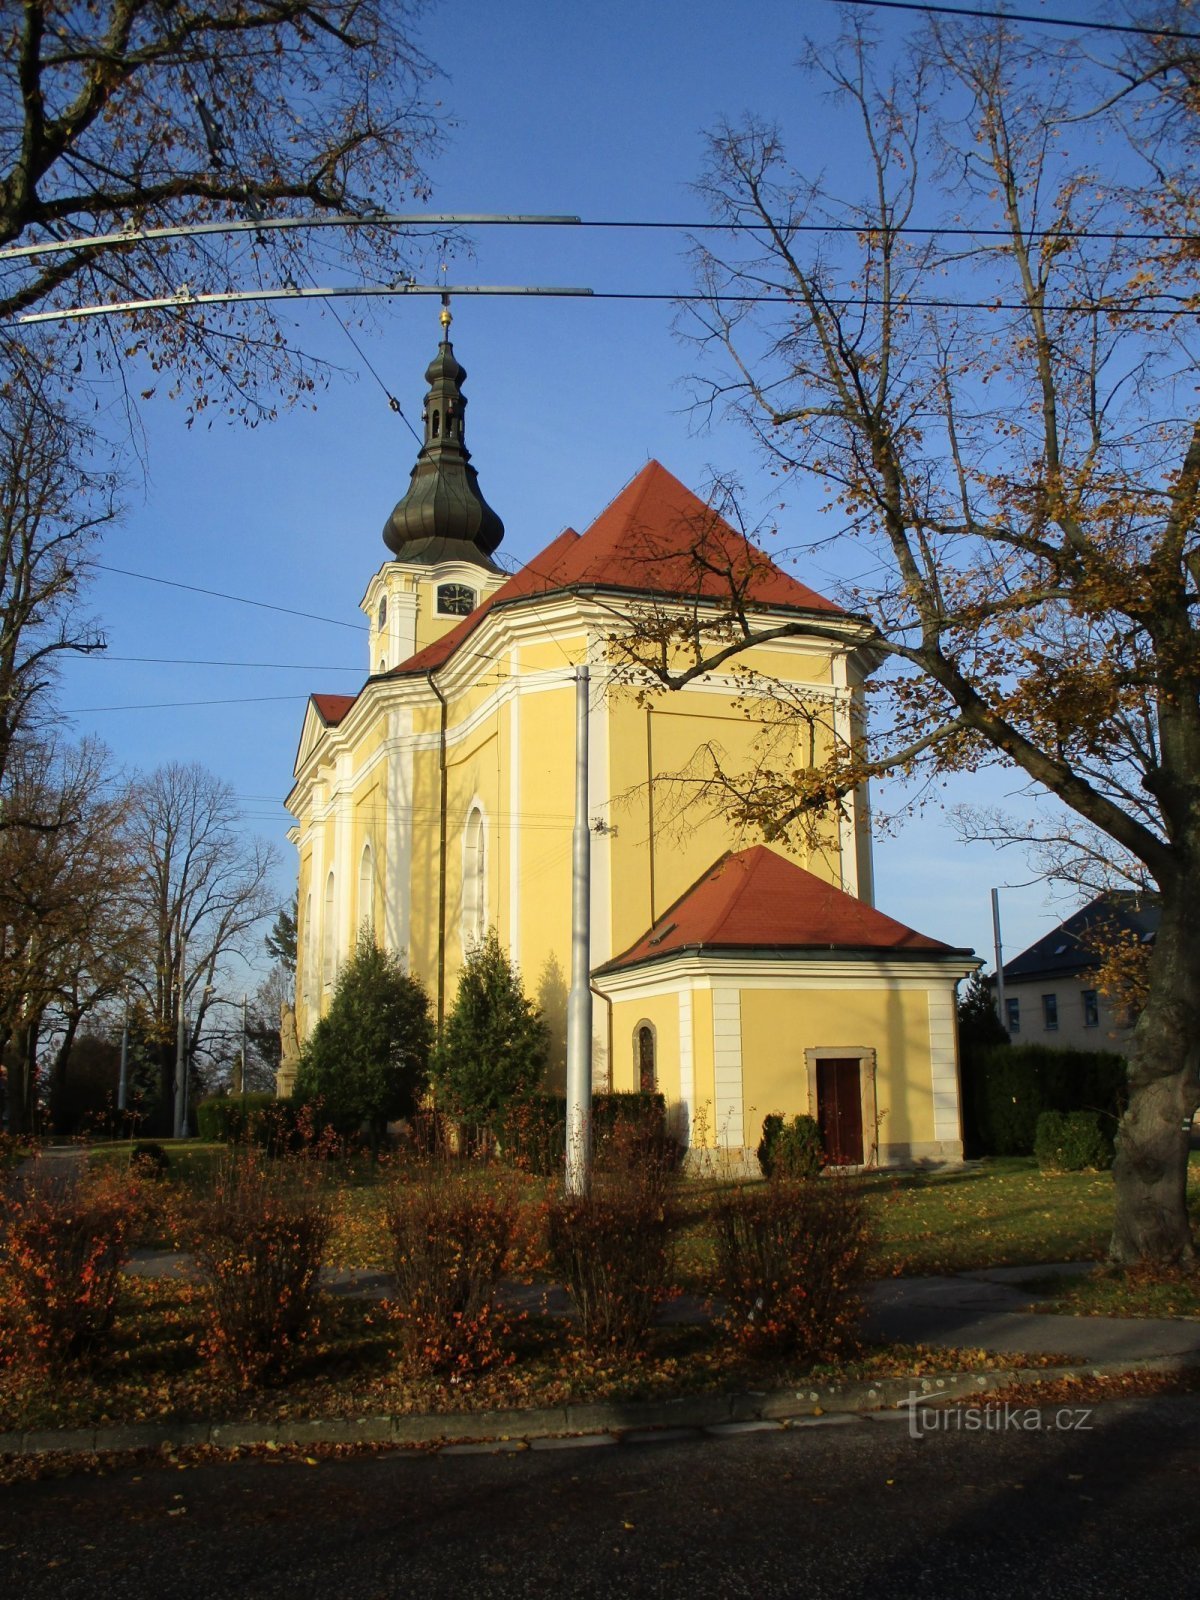 圣教堂安东尼娜，Nové Hradec Králové 的方丈（Hradec Králové，17.11.2019 年 XNUMX 月 XNUMX 日）